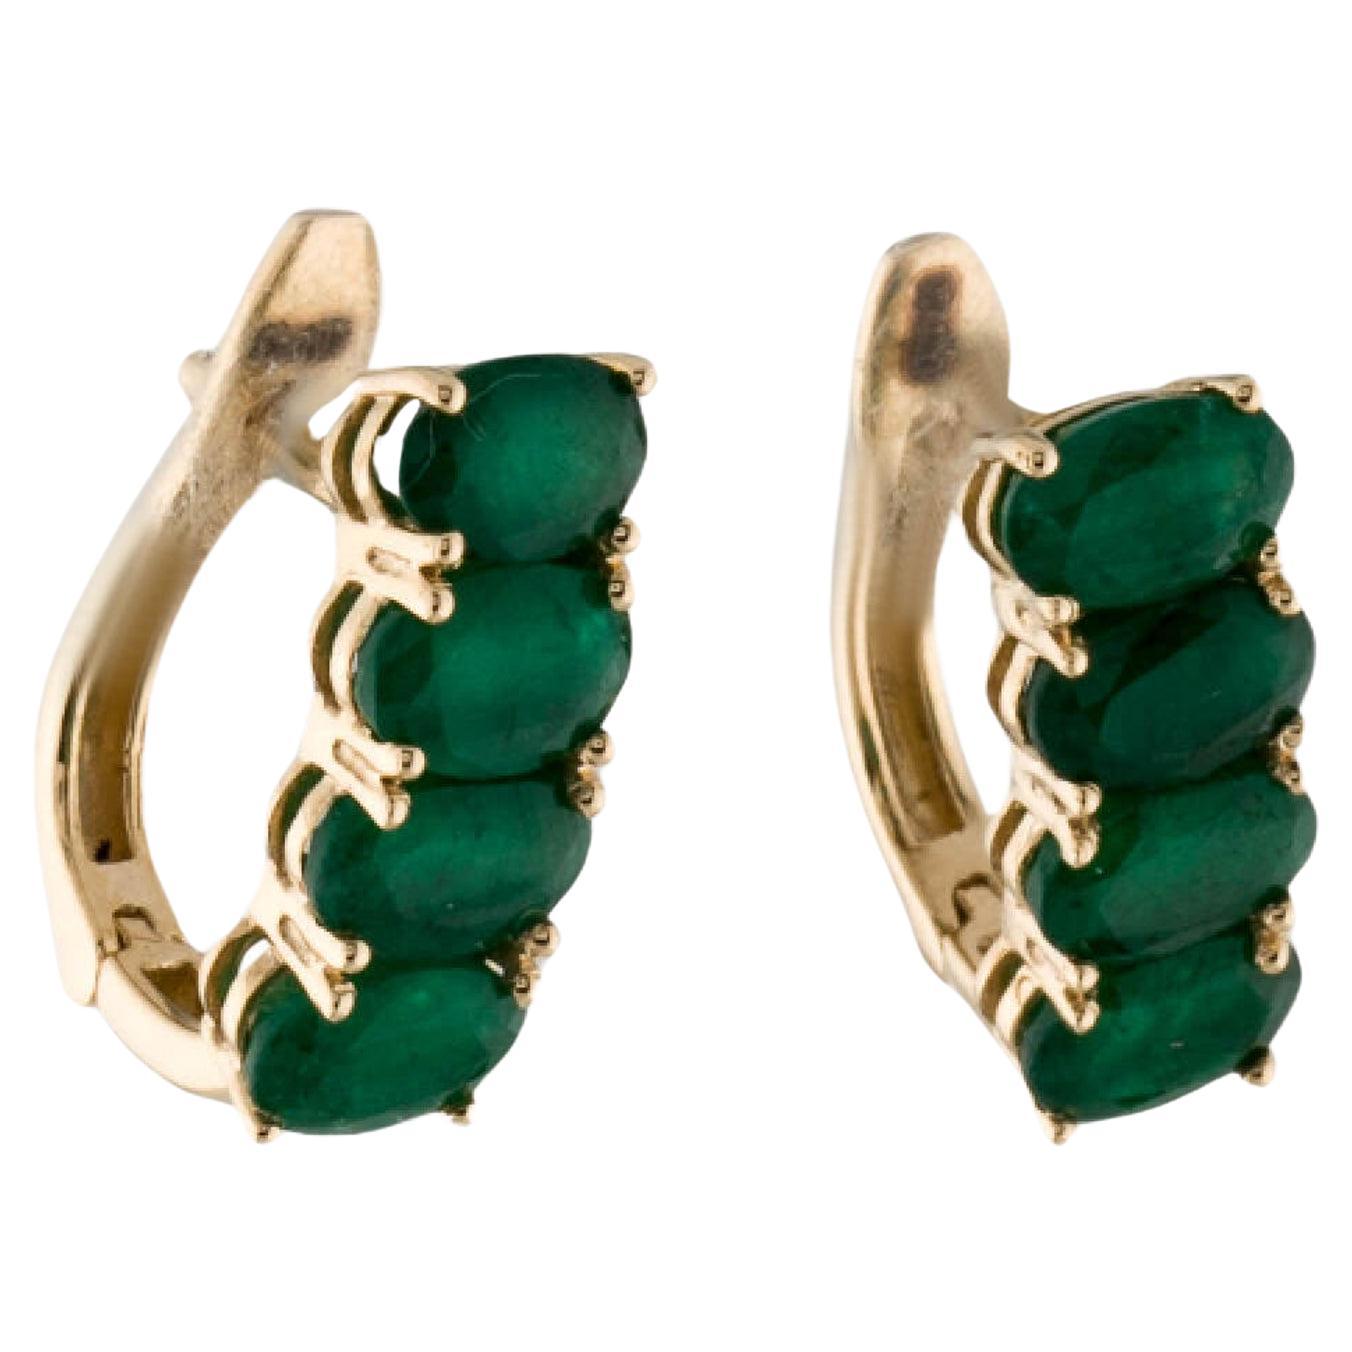 14K Emerald Earclip Earrings - 2.35ctw, Elegant Gemstone Jewelry, Classic Style For Sale